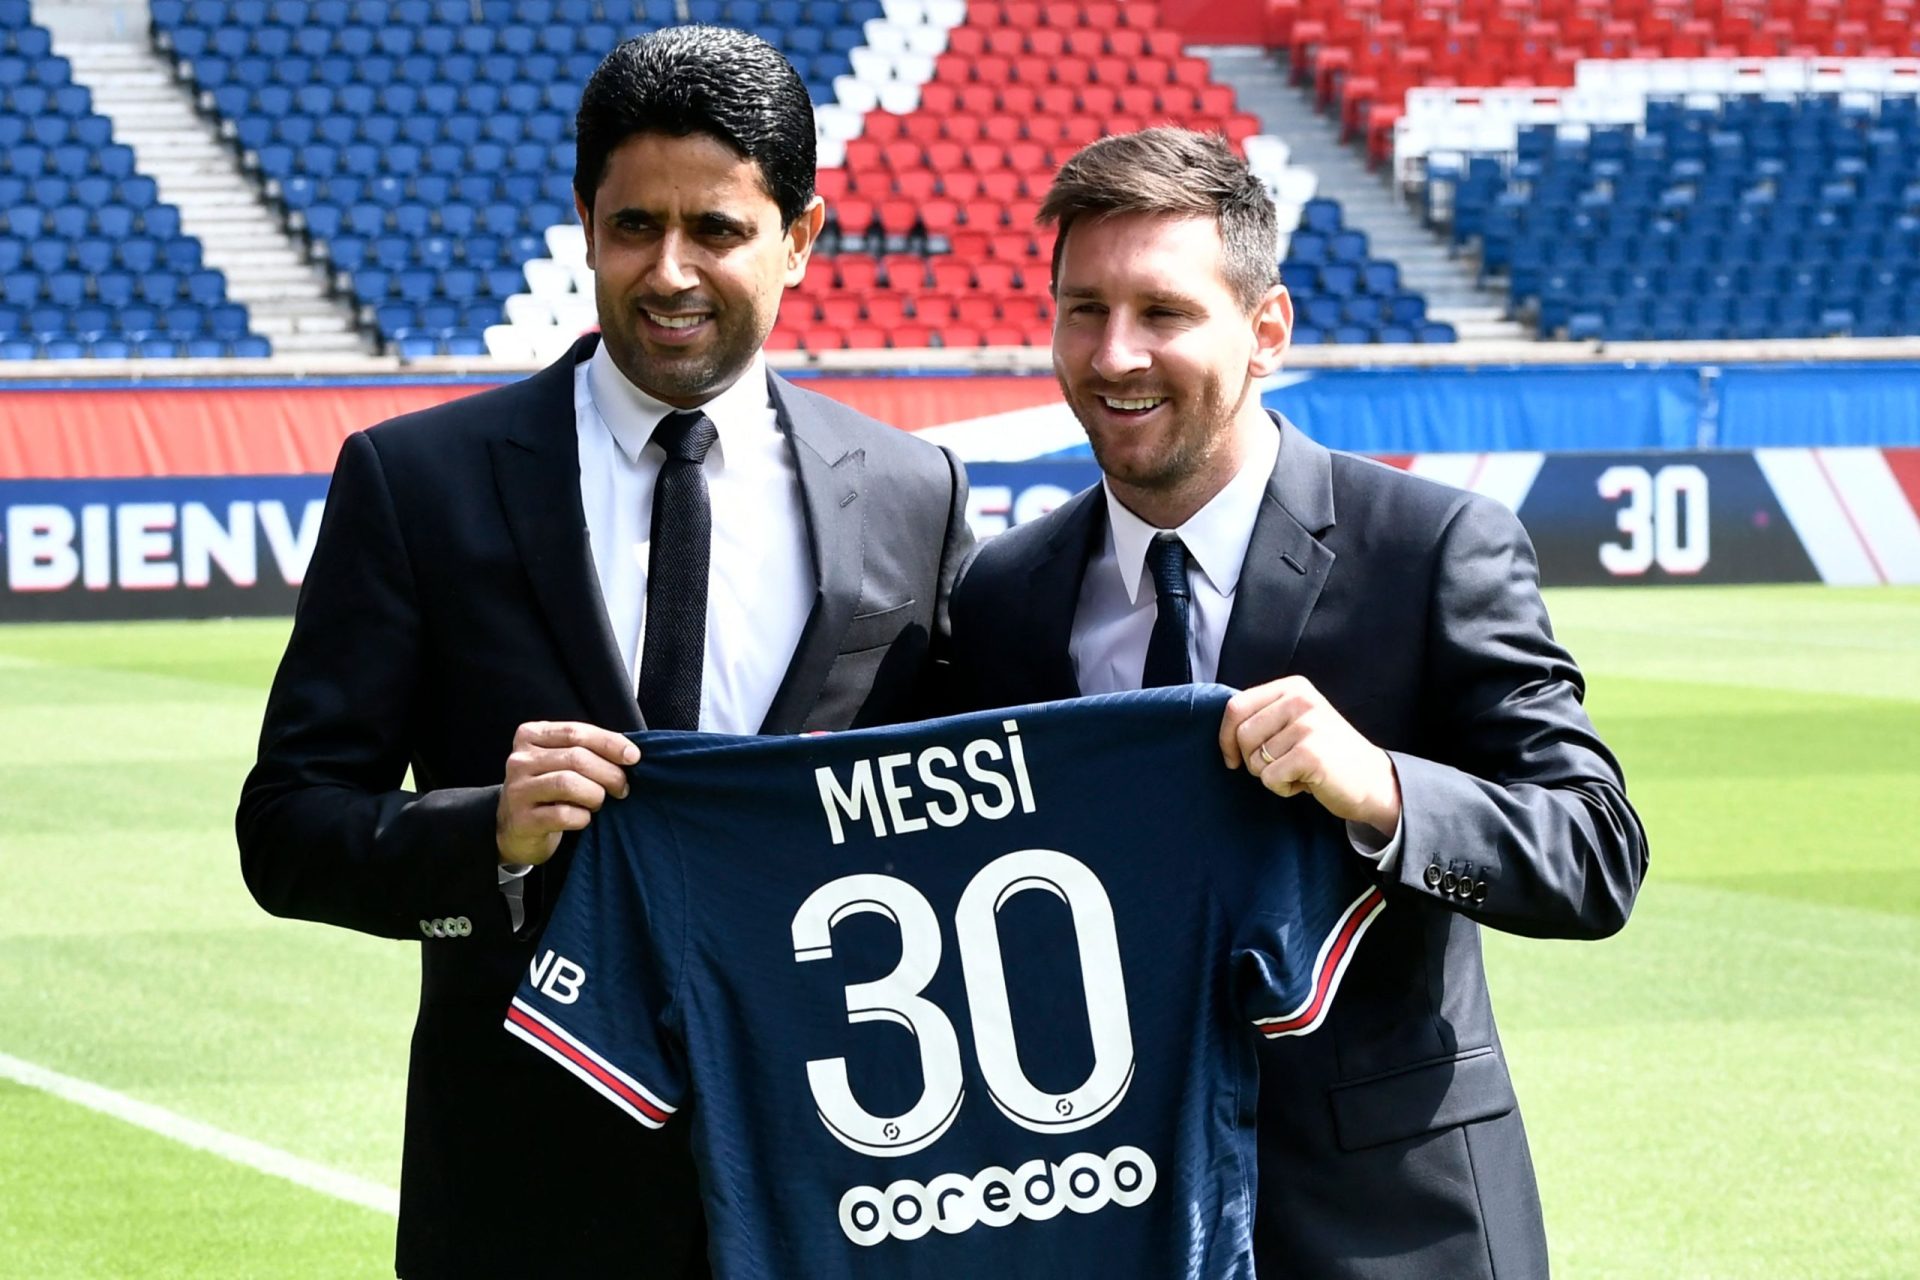 “Estou feliz e emocionado”. Messi apresentado no PSG